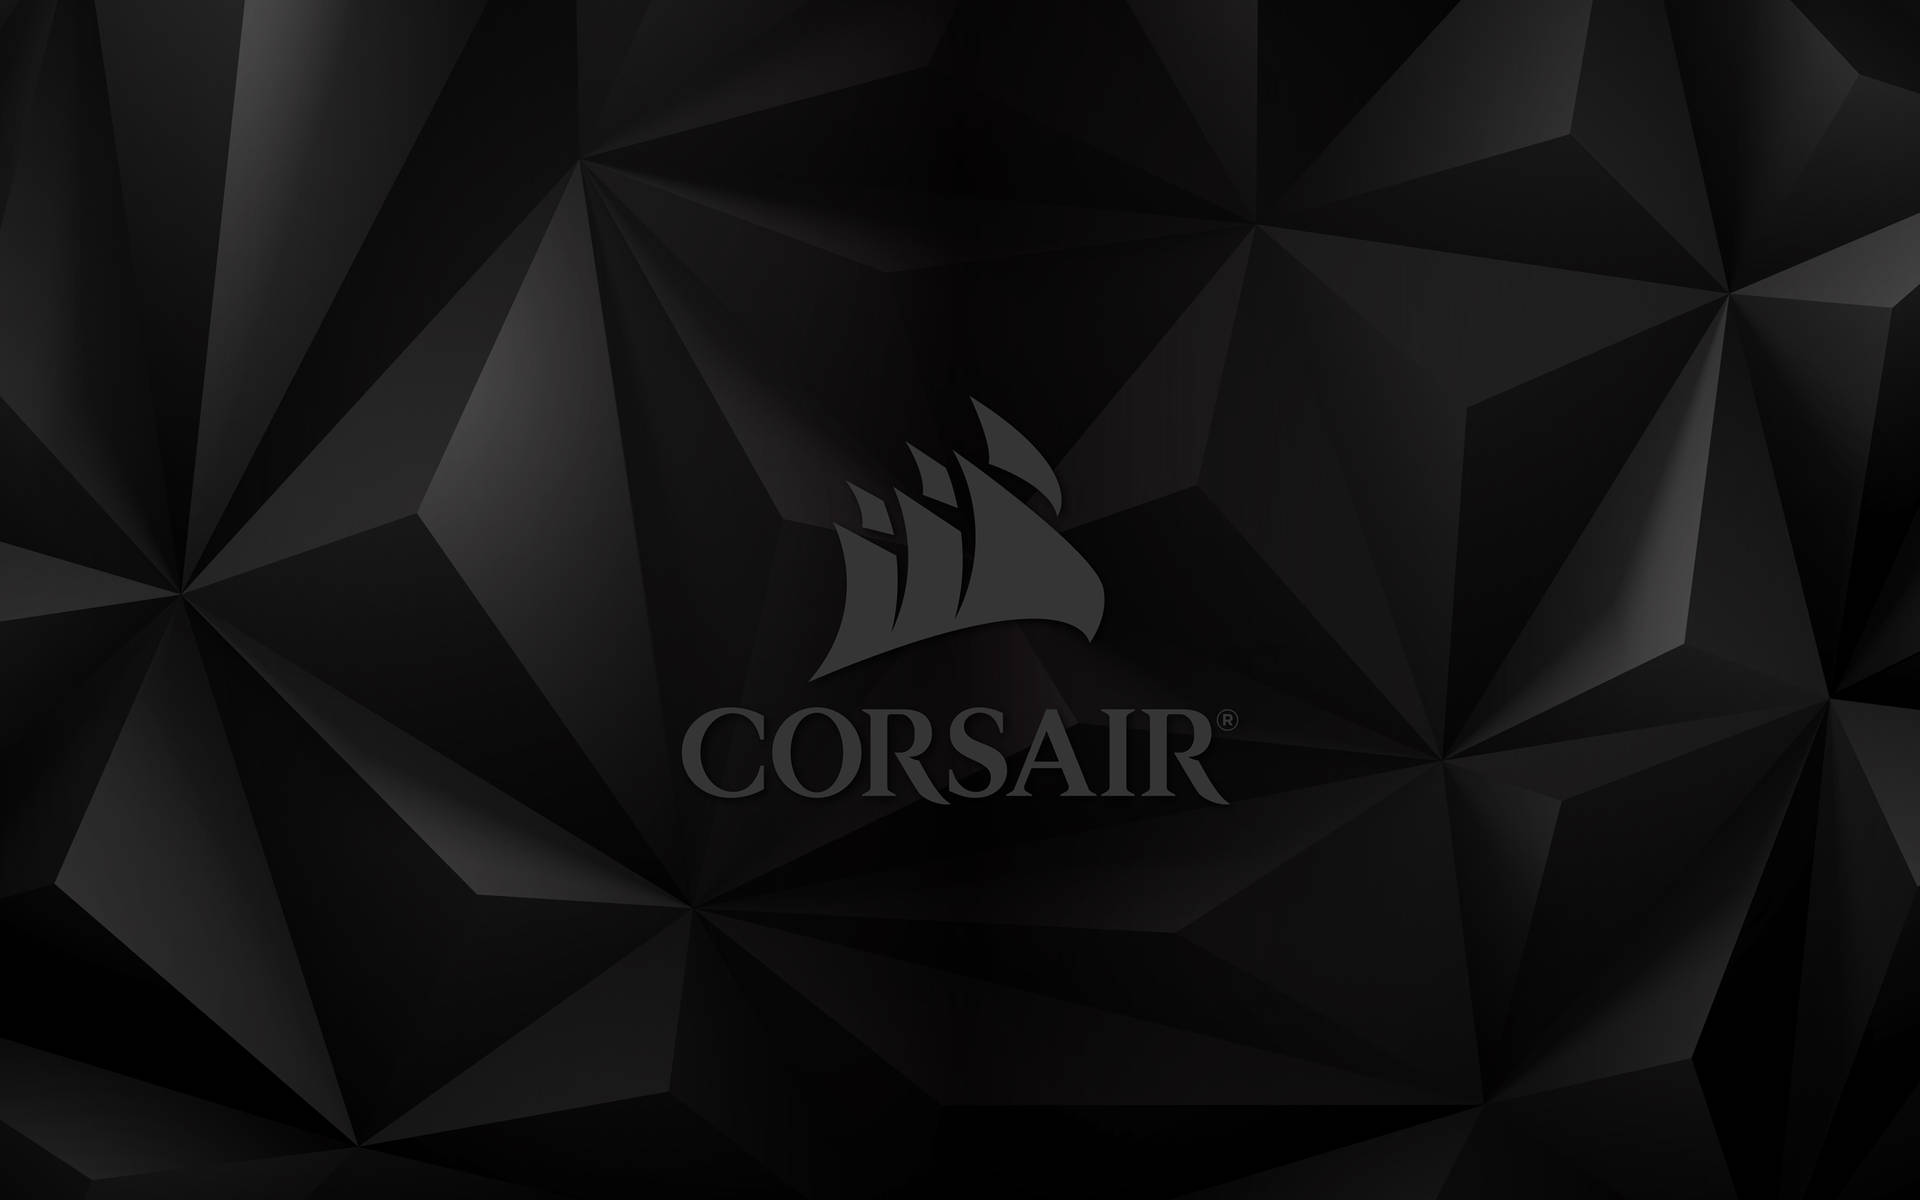 Corsair Gamer Logo Background